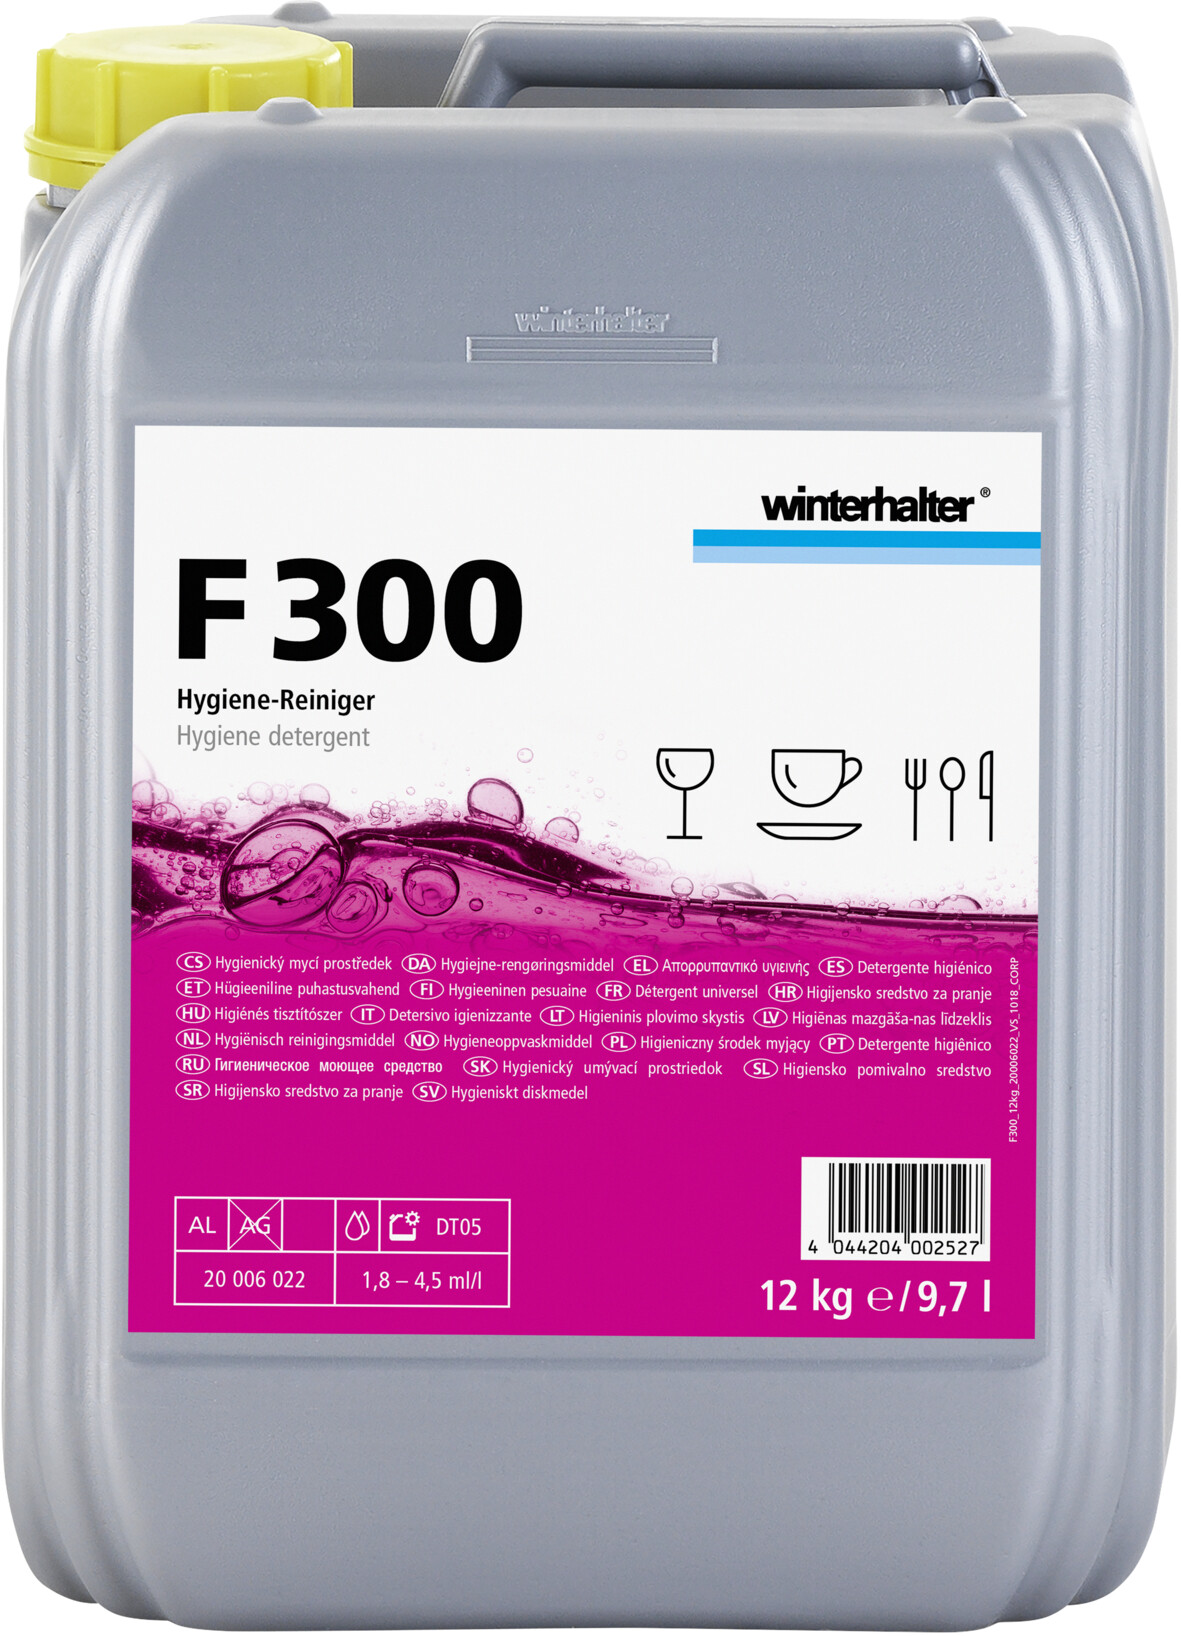 Winterhalter F300 détergent universel liquide 12kg